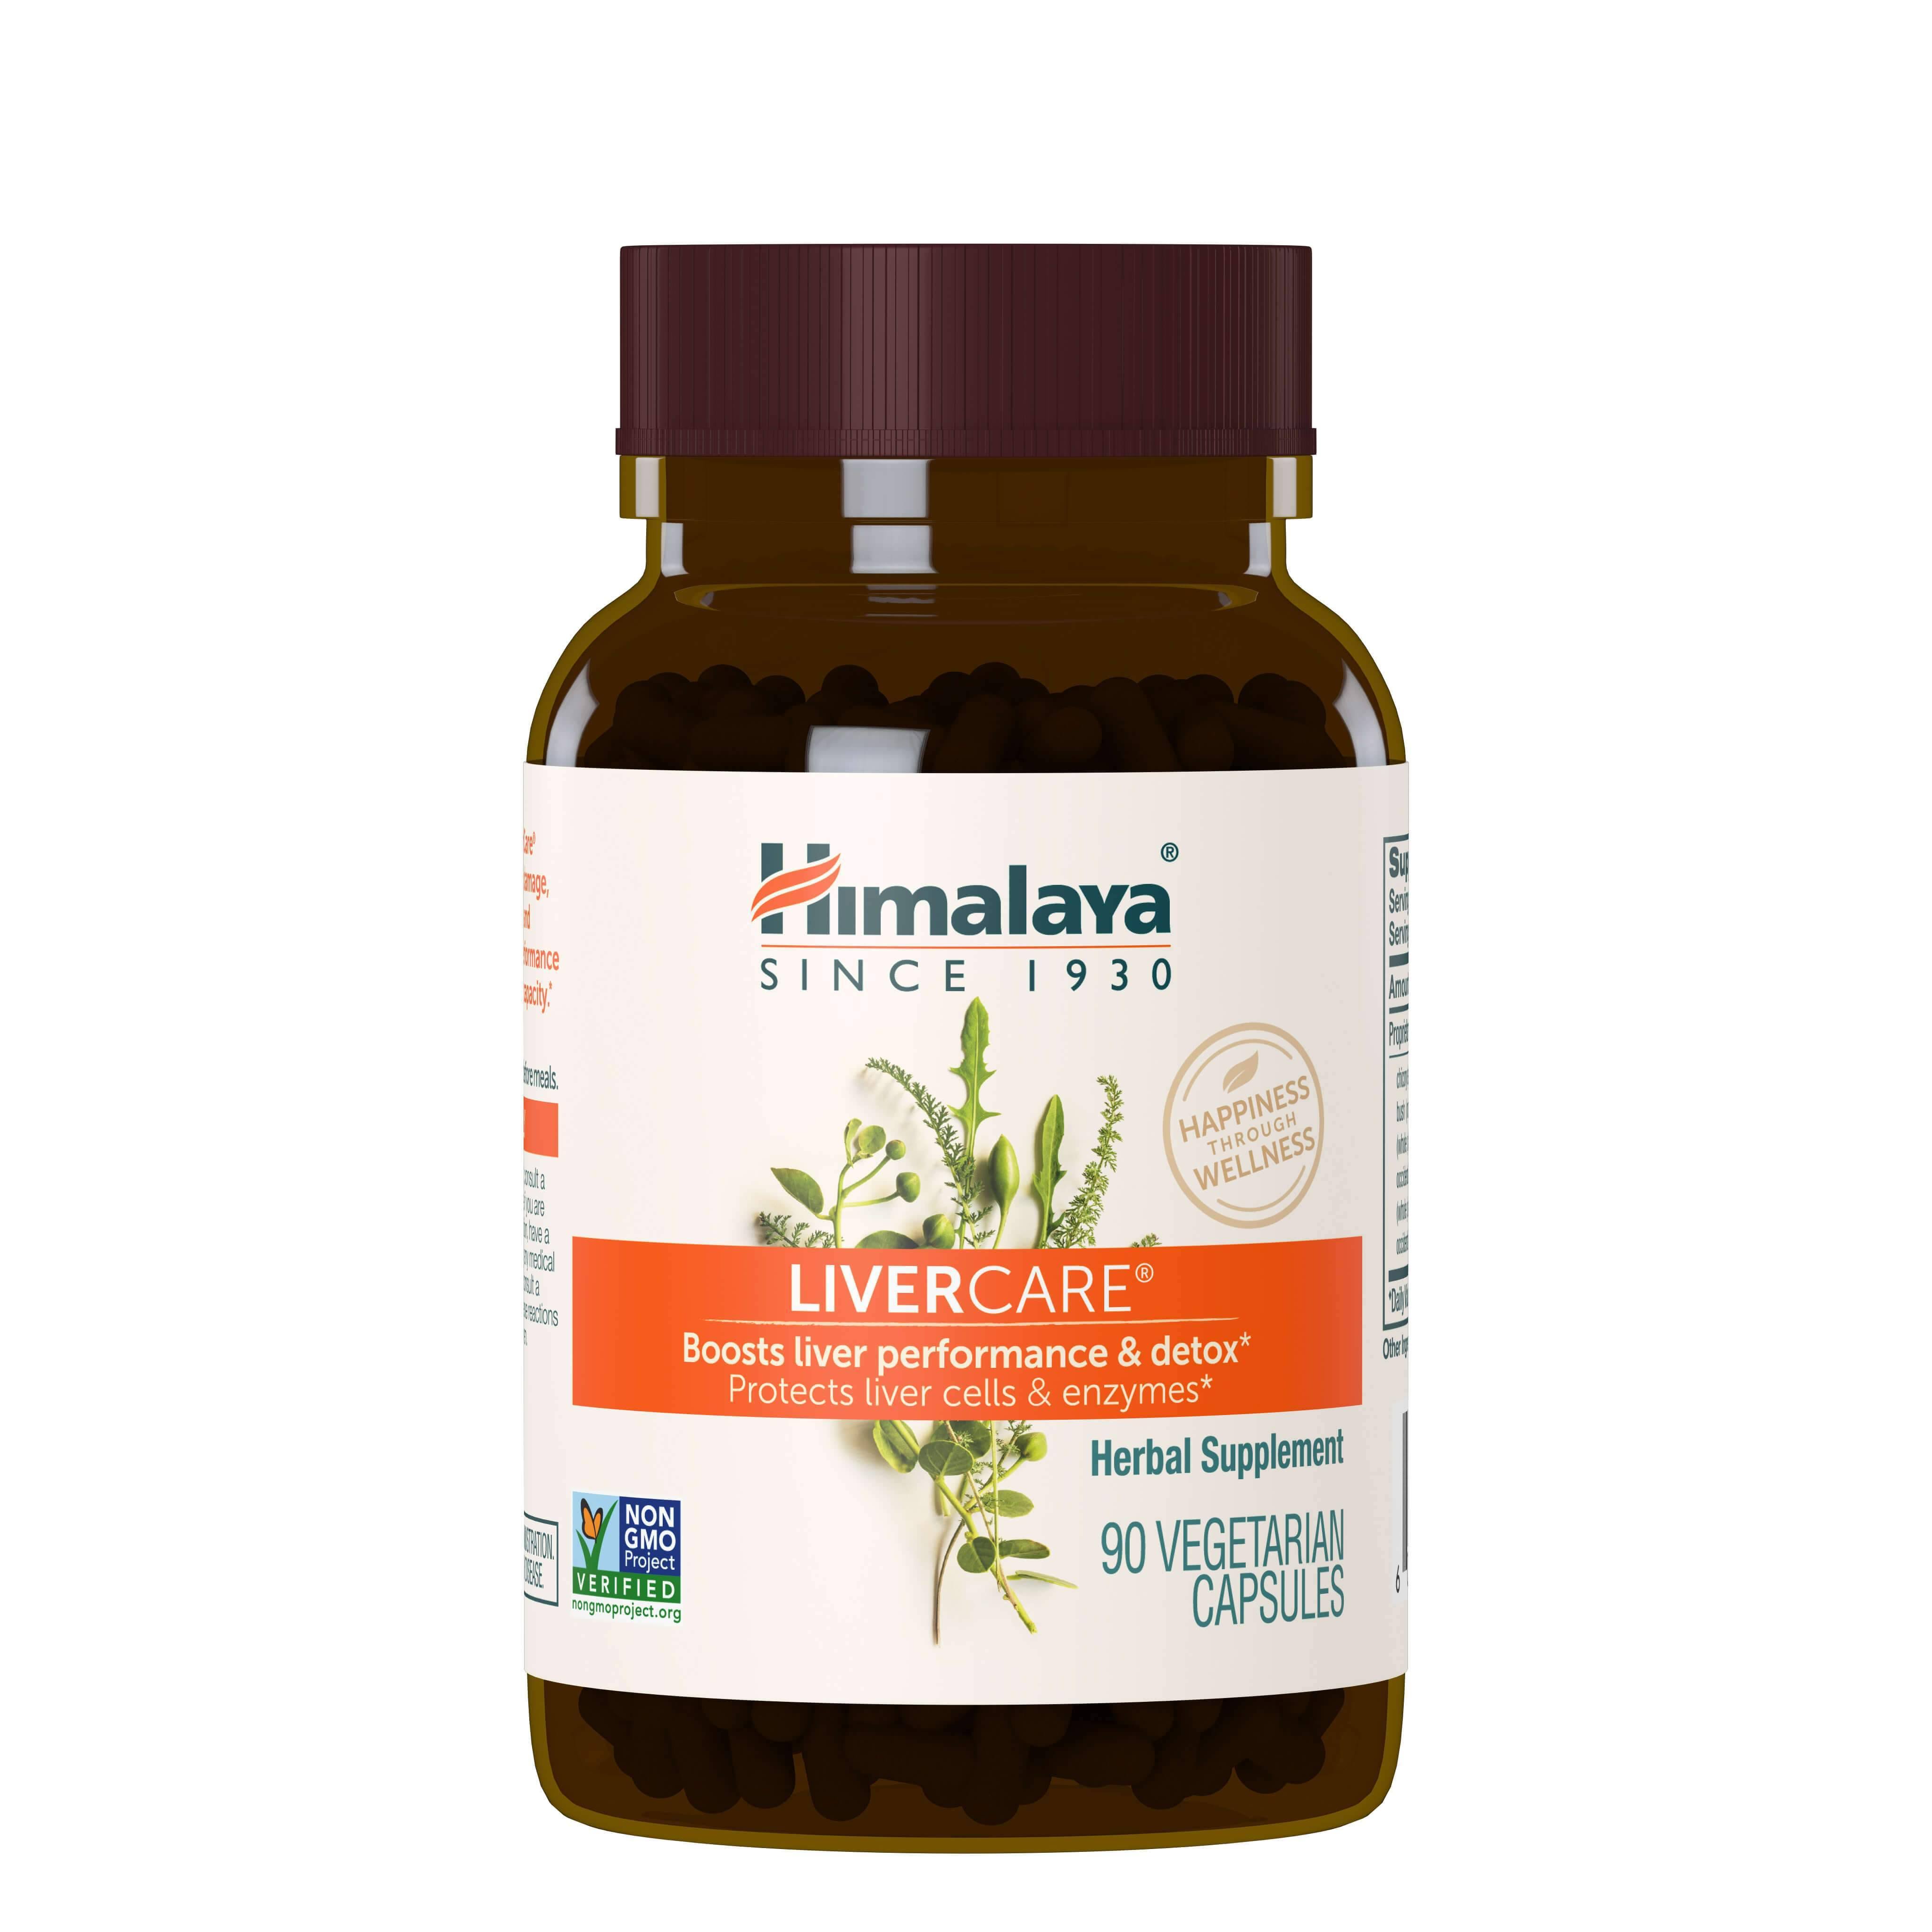 Himalaya LiverCare Herbal Supplement - 90 Vegetarian Capsules